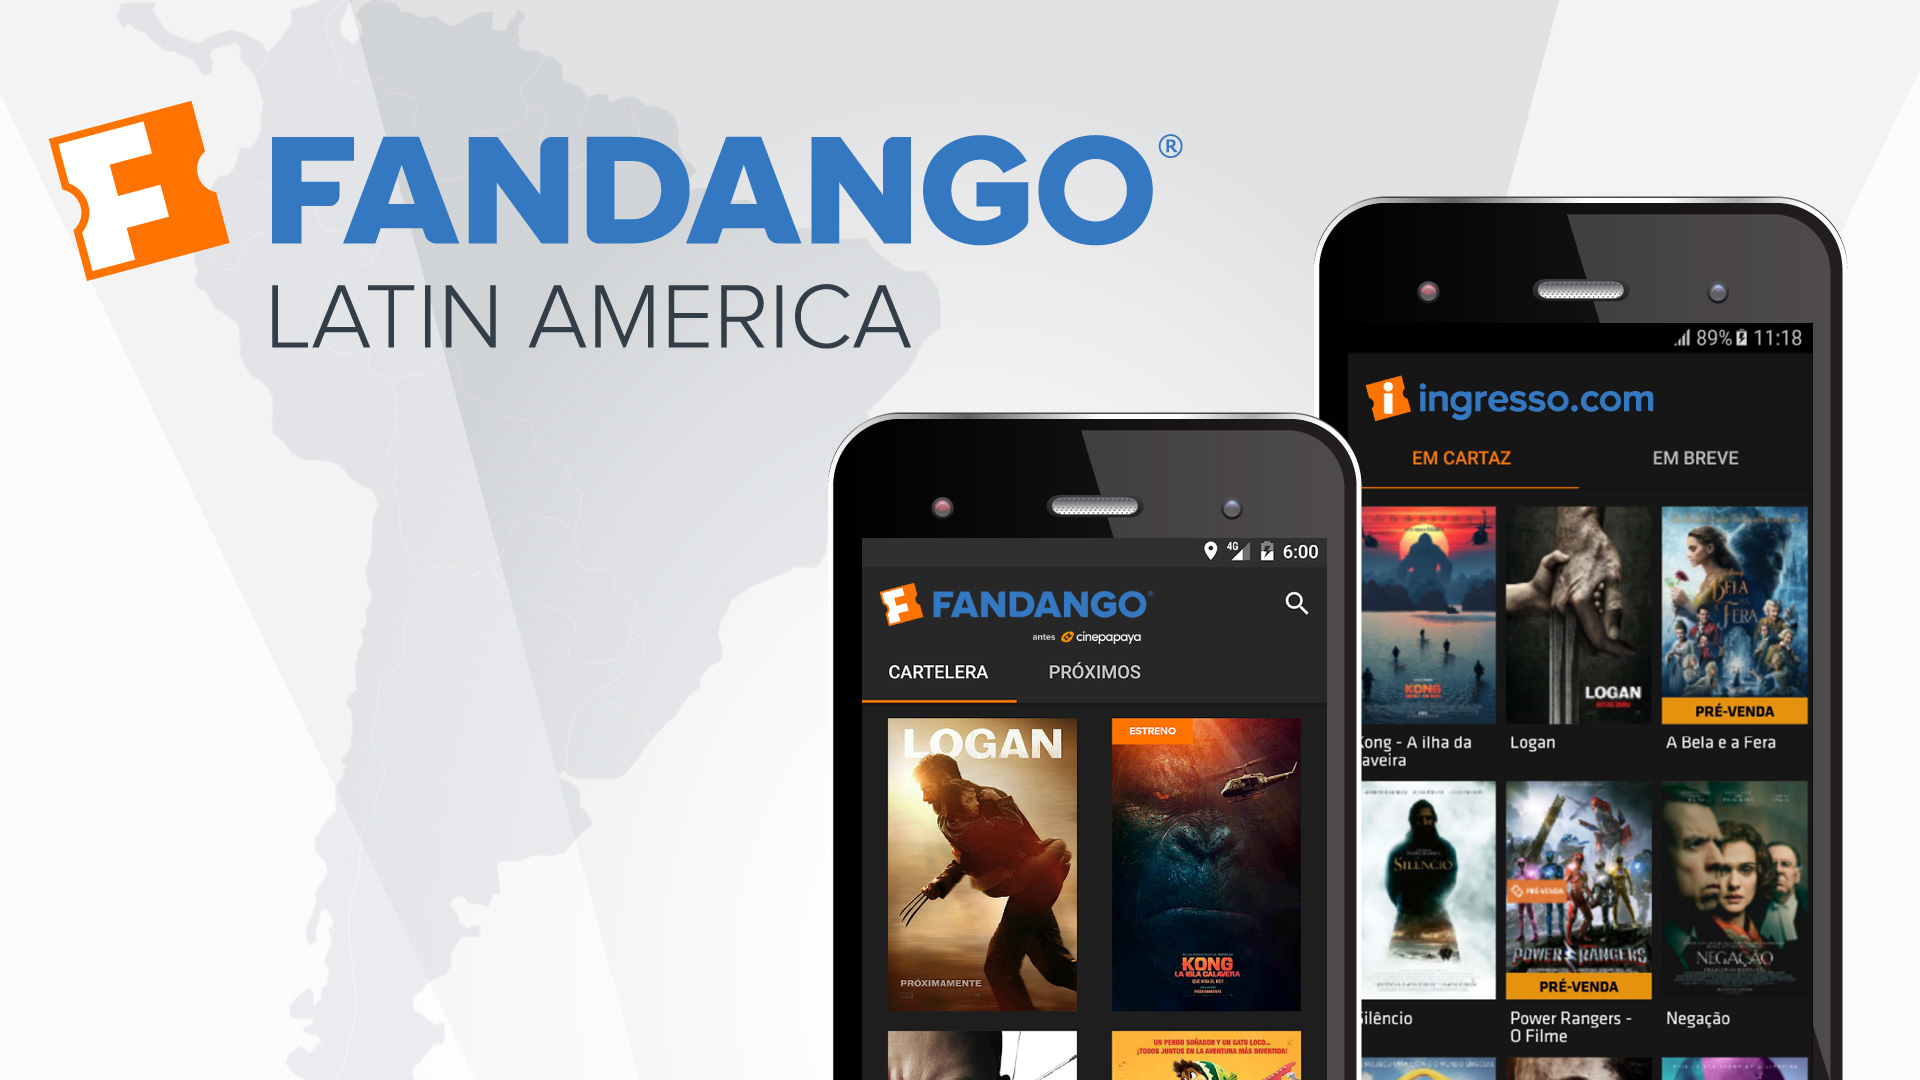 Fandango, controladora da Ingresso.com, encerra operação no resto da América Latina